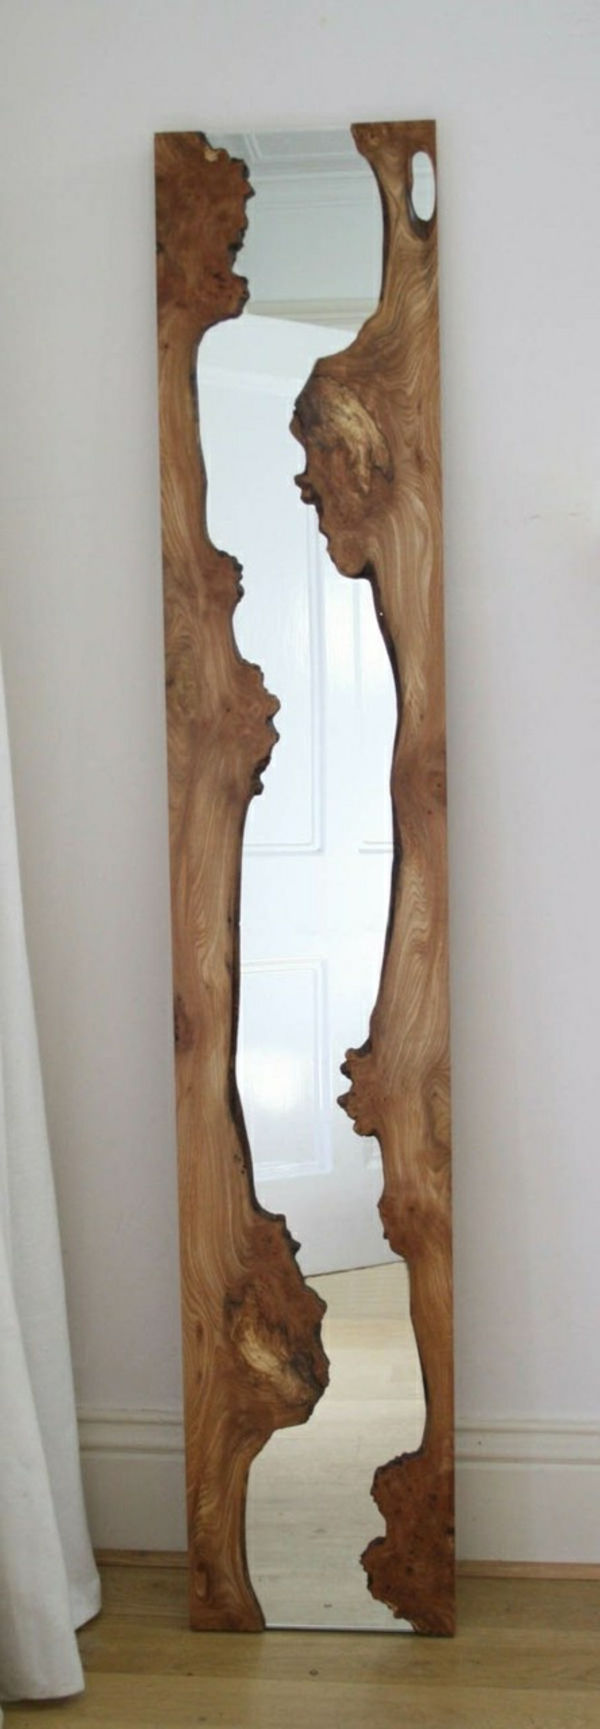 espelho de troncos com um visual clássico